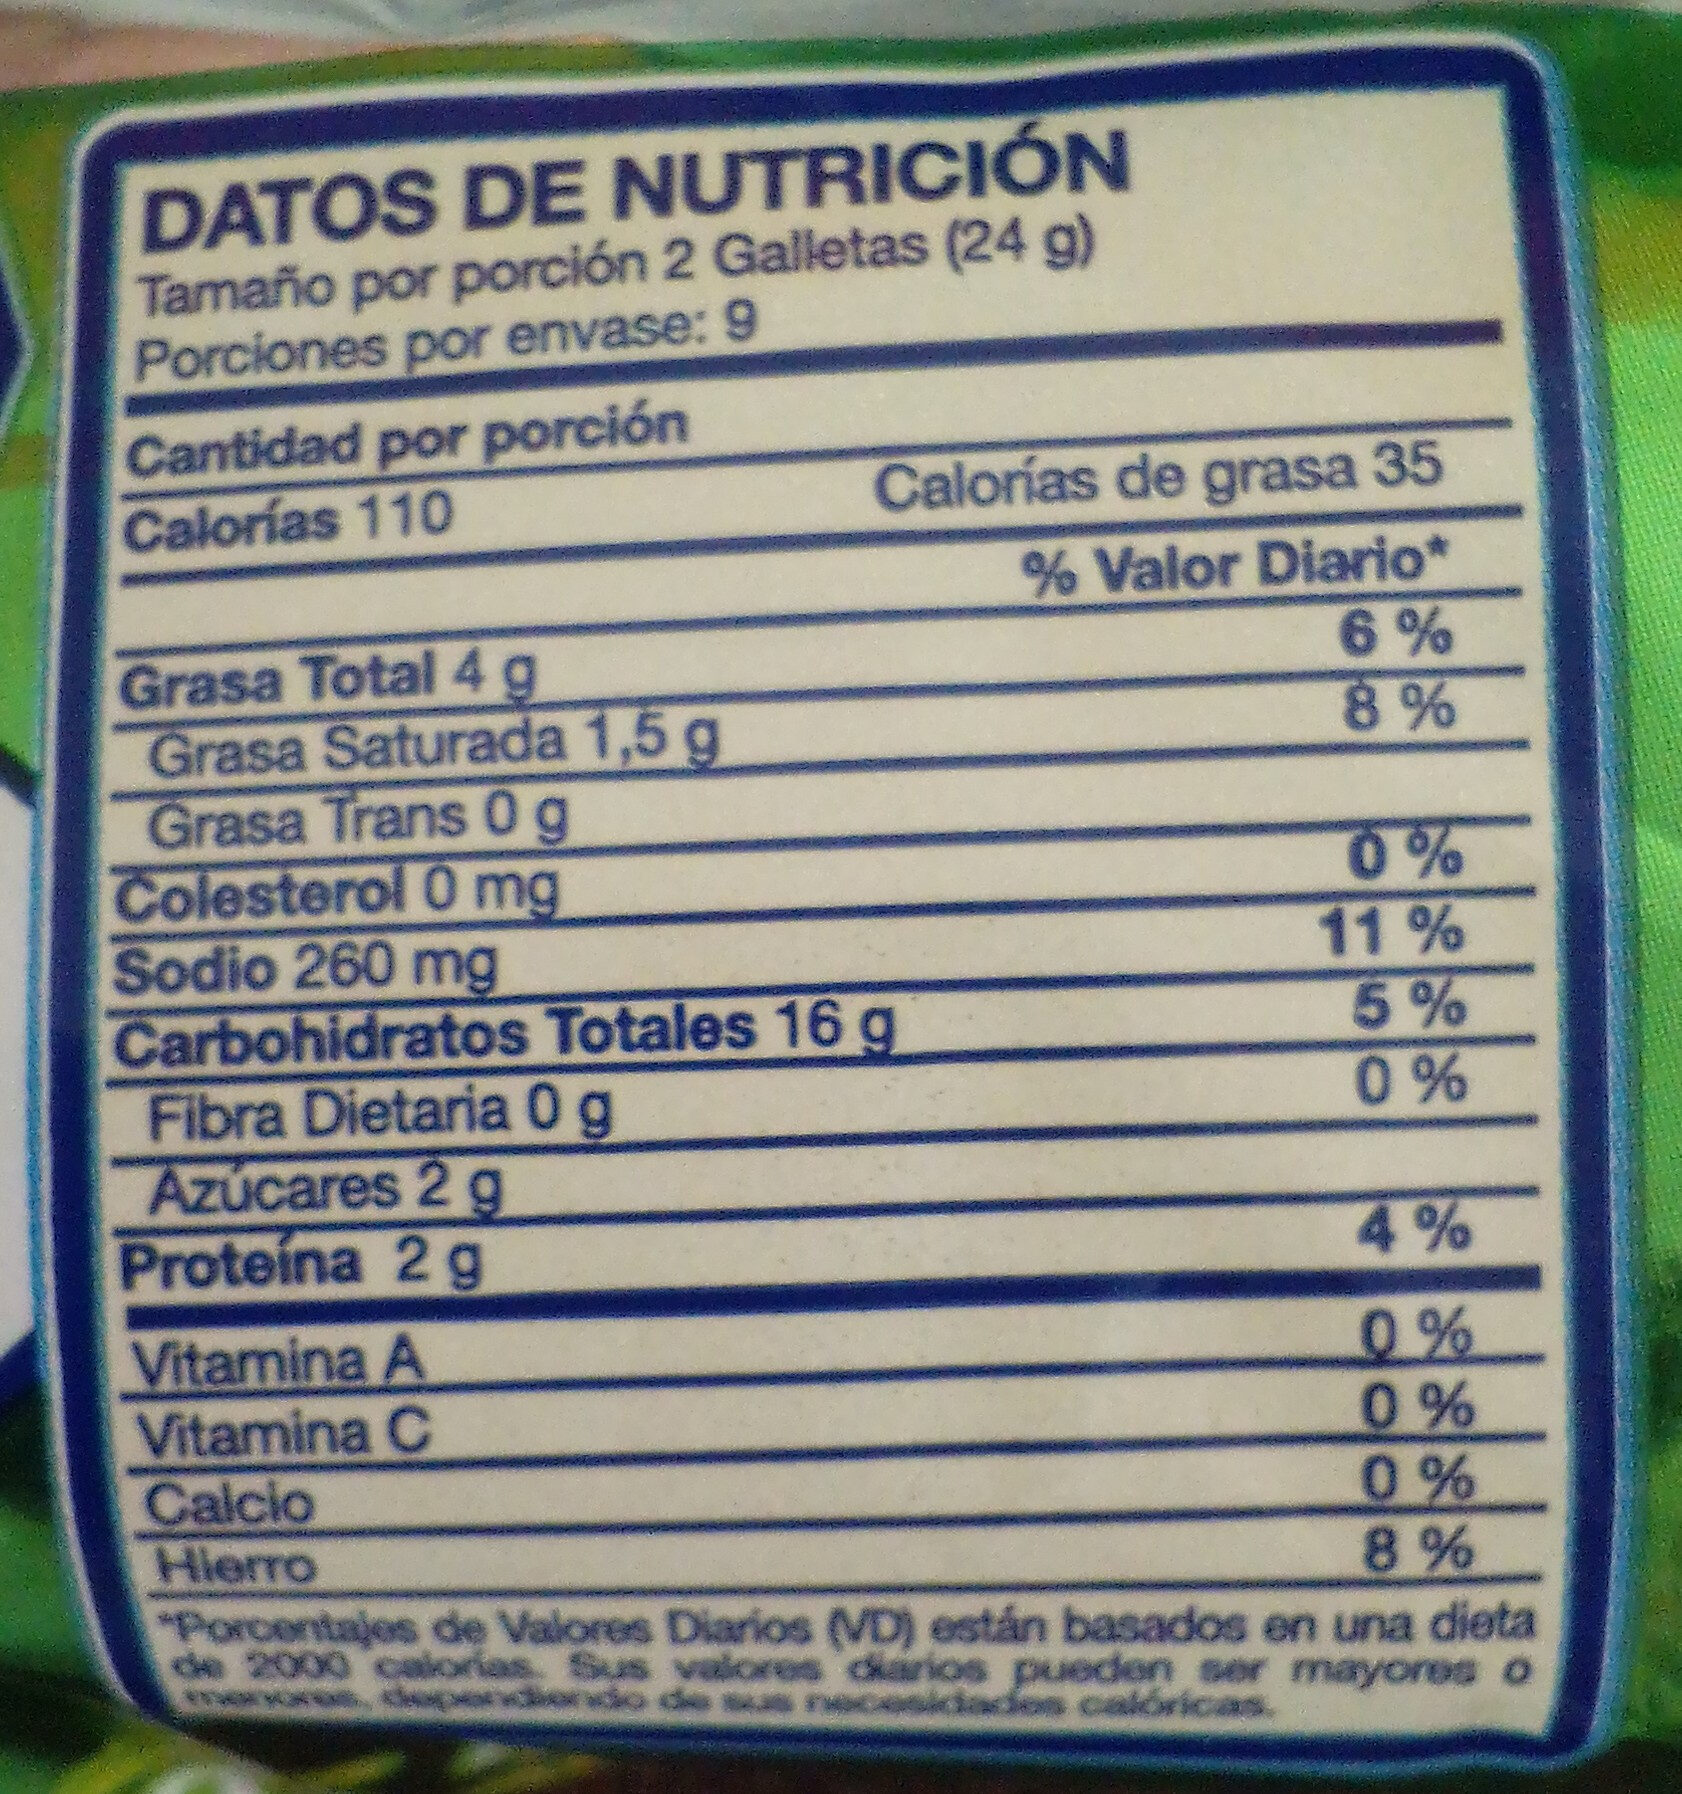 Saltinas Queso Crema & Cebolla - Nutrition facts - es